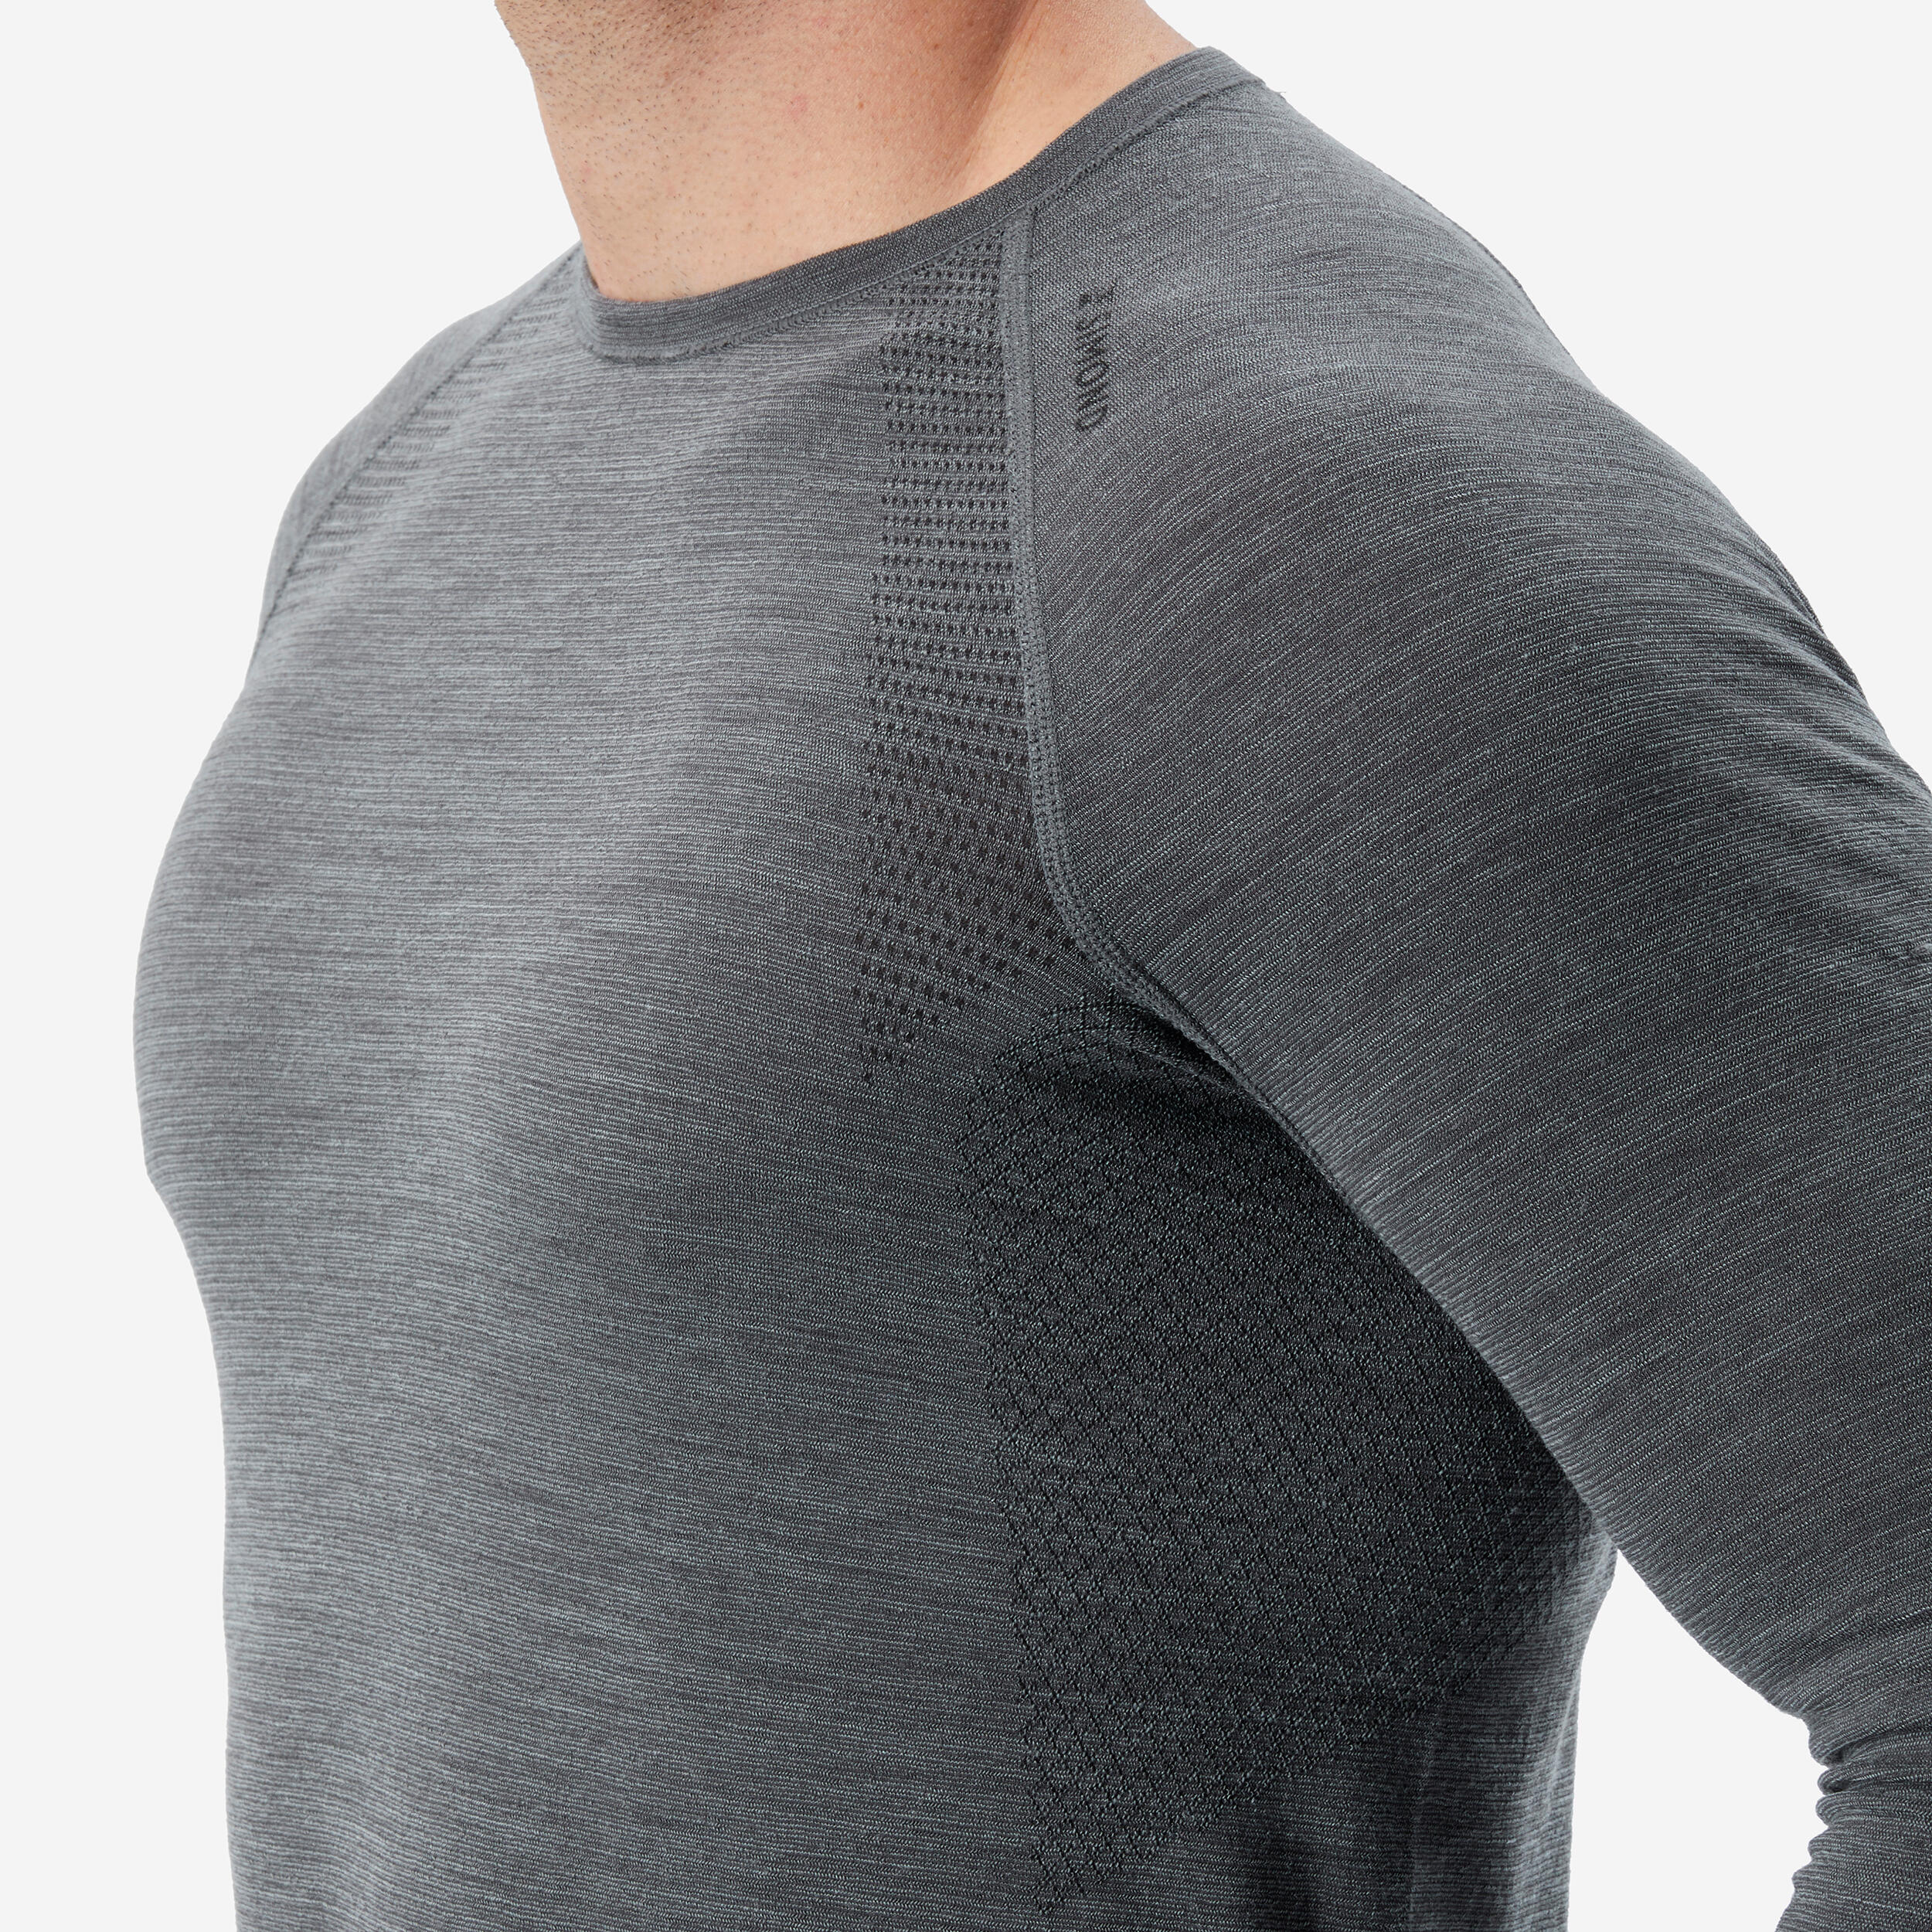 Men's Long-Sleeve Seamless Wool T-Shirt - ALPINISM 3/4